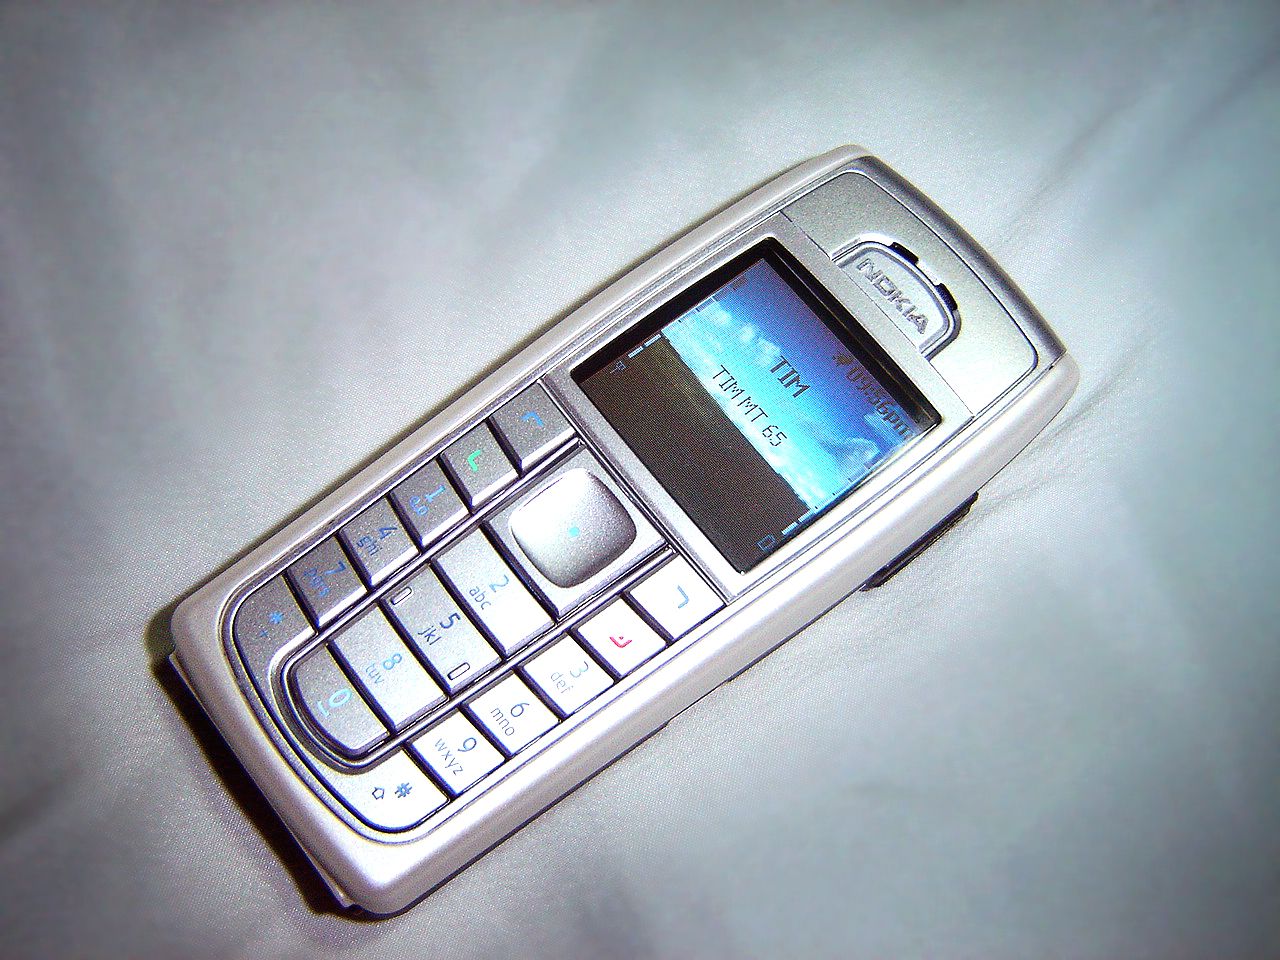 Nokia 3310 - Simple English Wikipedia, the free encyclopedia